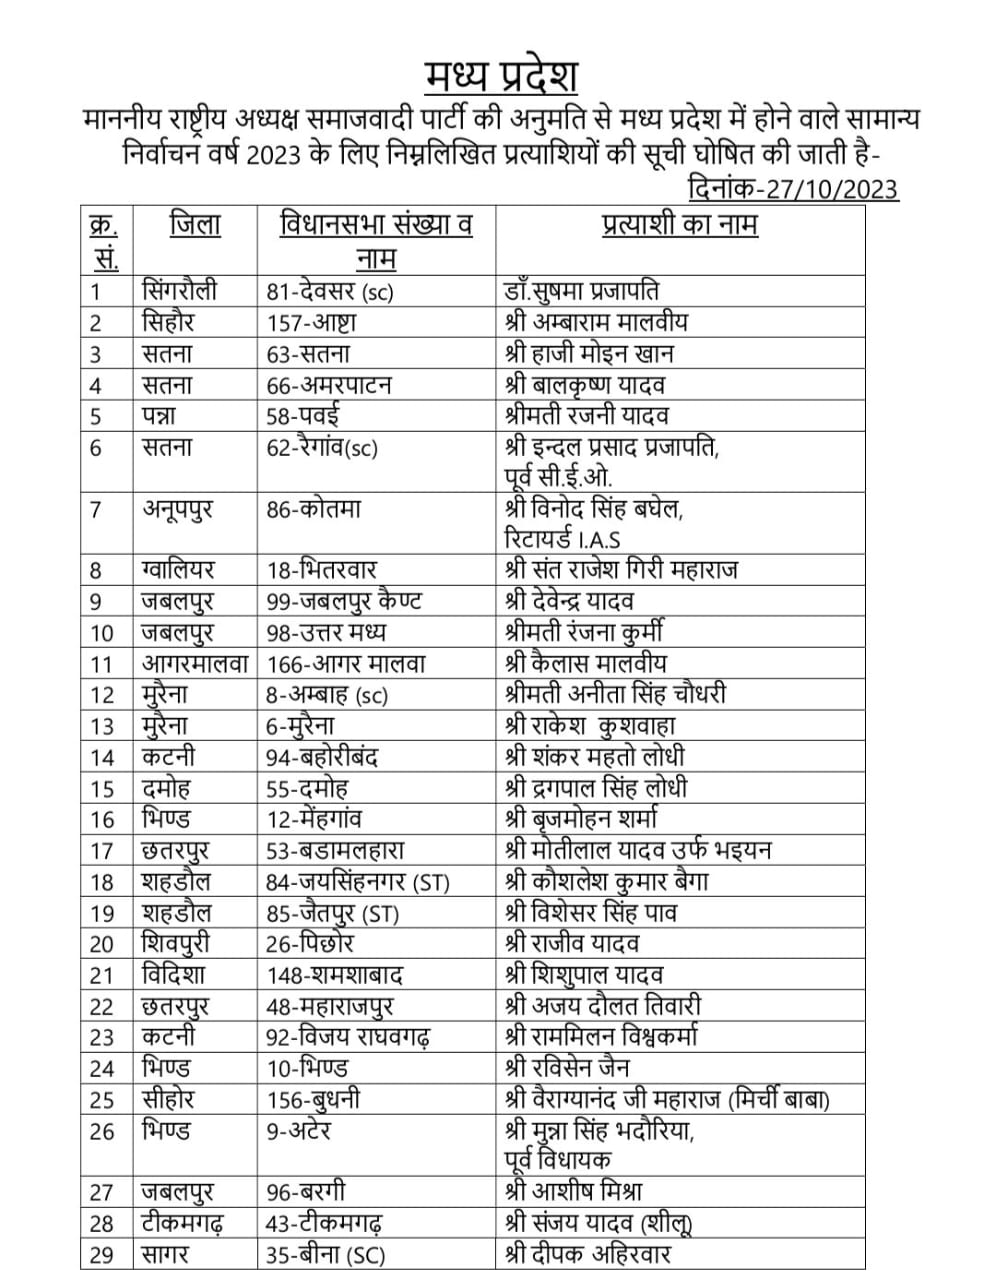 Samajwadi Party Candidates List: समाजवादी पार्टी की एक और लिस्ट जारी, 35 उम्मीदवारों को मैदान में उतारा, 5 के बदले टिकट